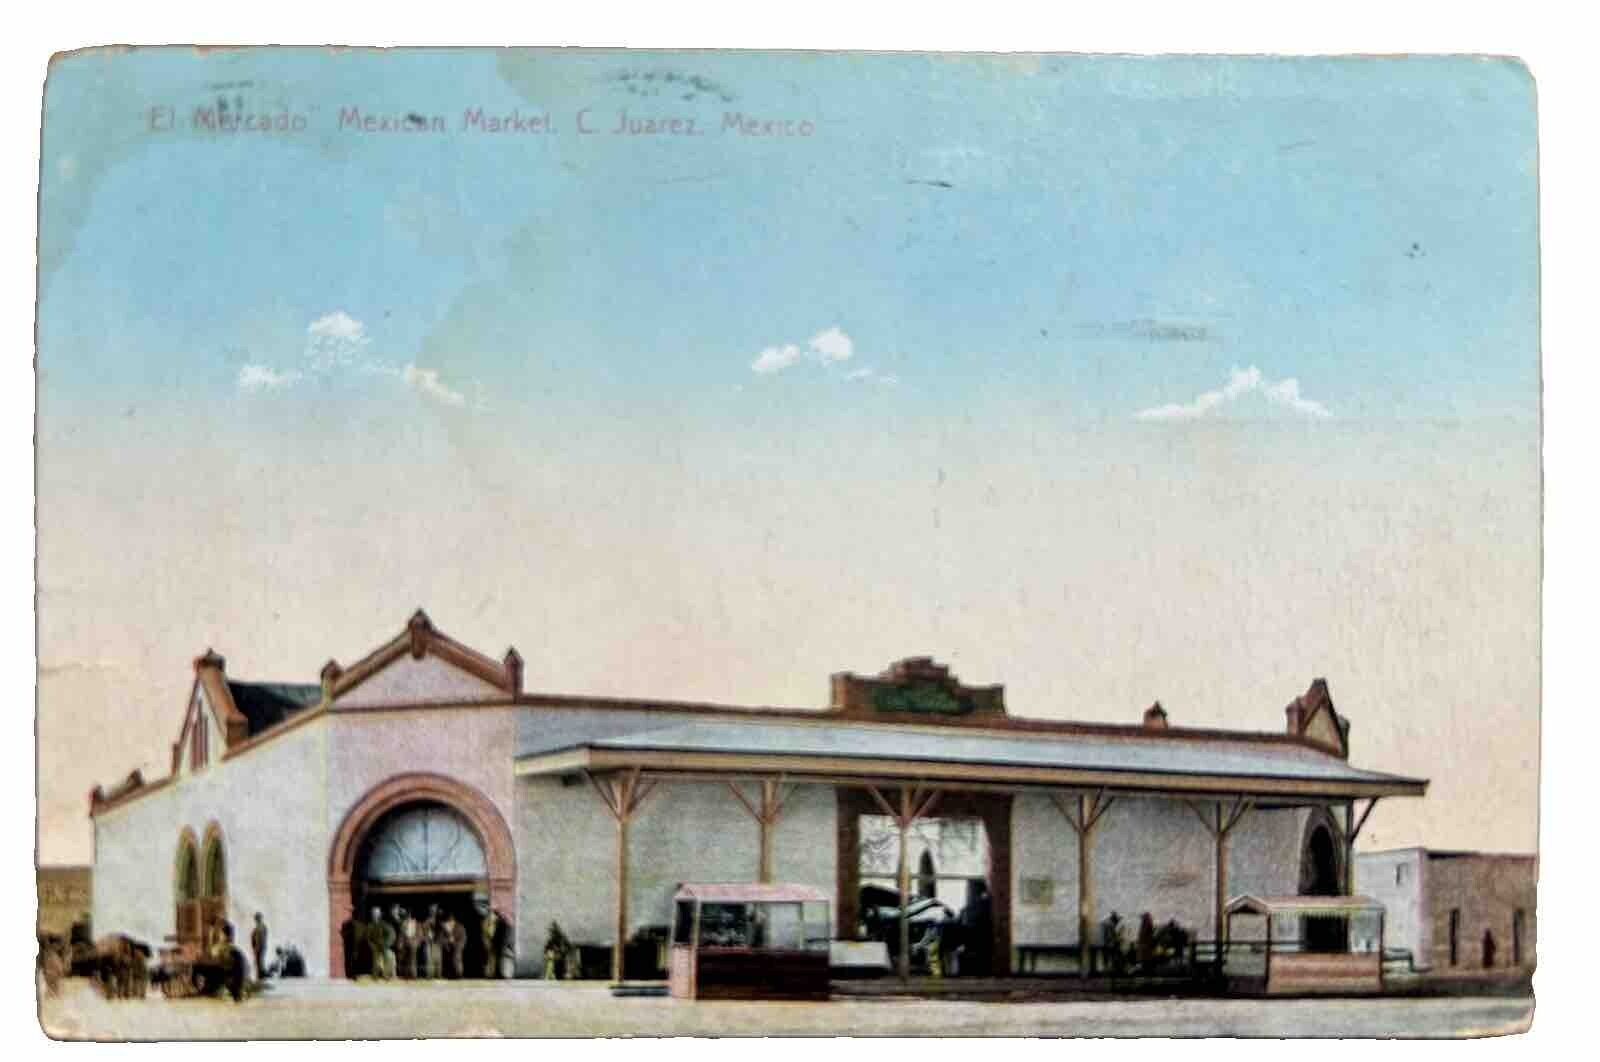 El Mercado Mexican Market, C. Juarez, Mexico Vintage Postcard 1909